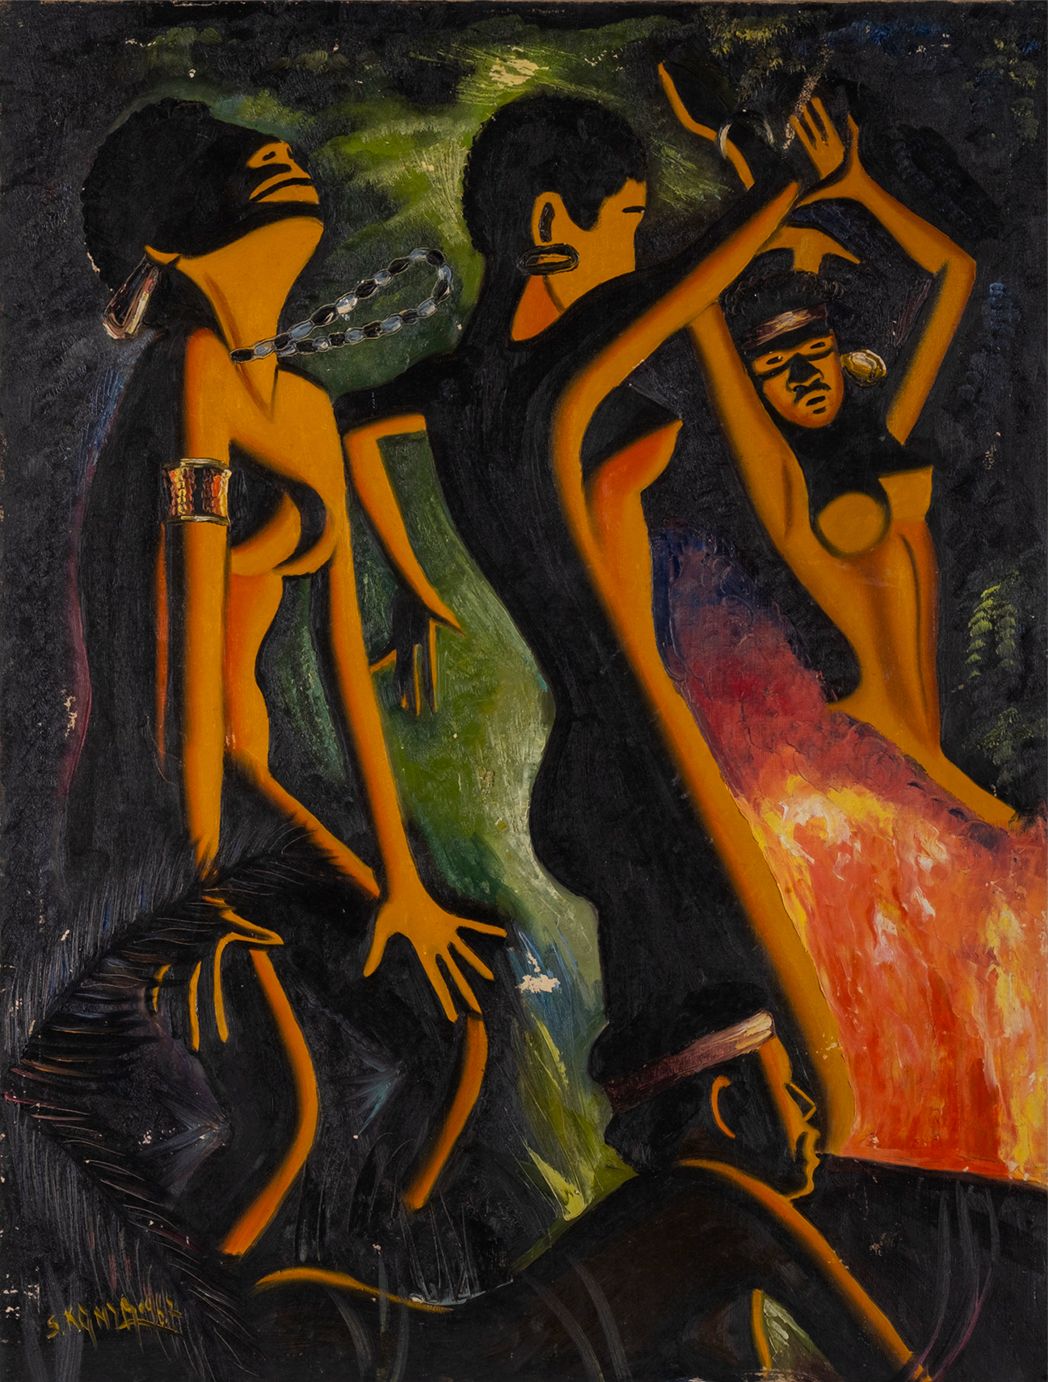 S.Konzambi 布面油画1967年，签名，80 x 60厘米。艺术家向我们展示了欣喜若狂的身体和从画中传出的旋律的节奏的欣喜。